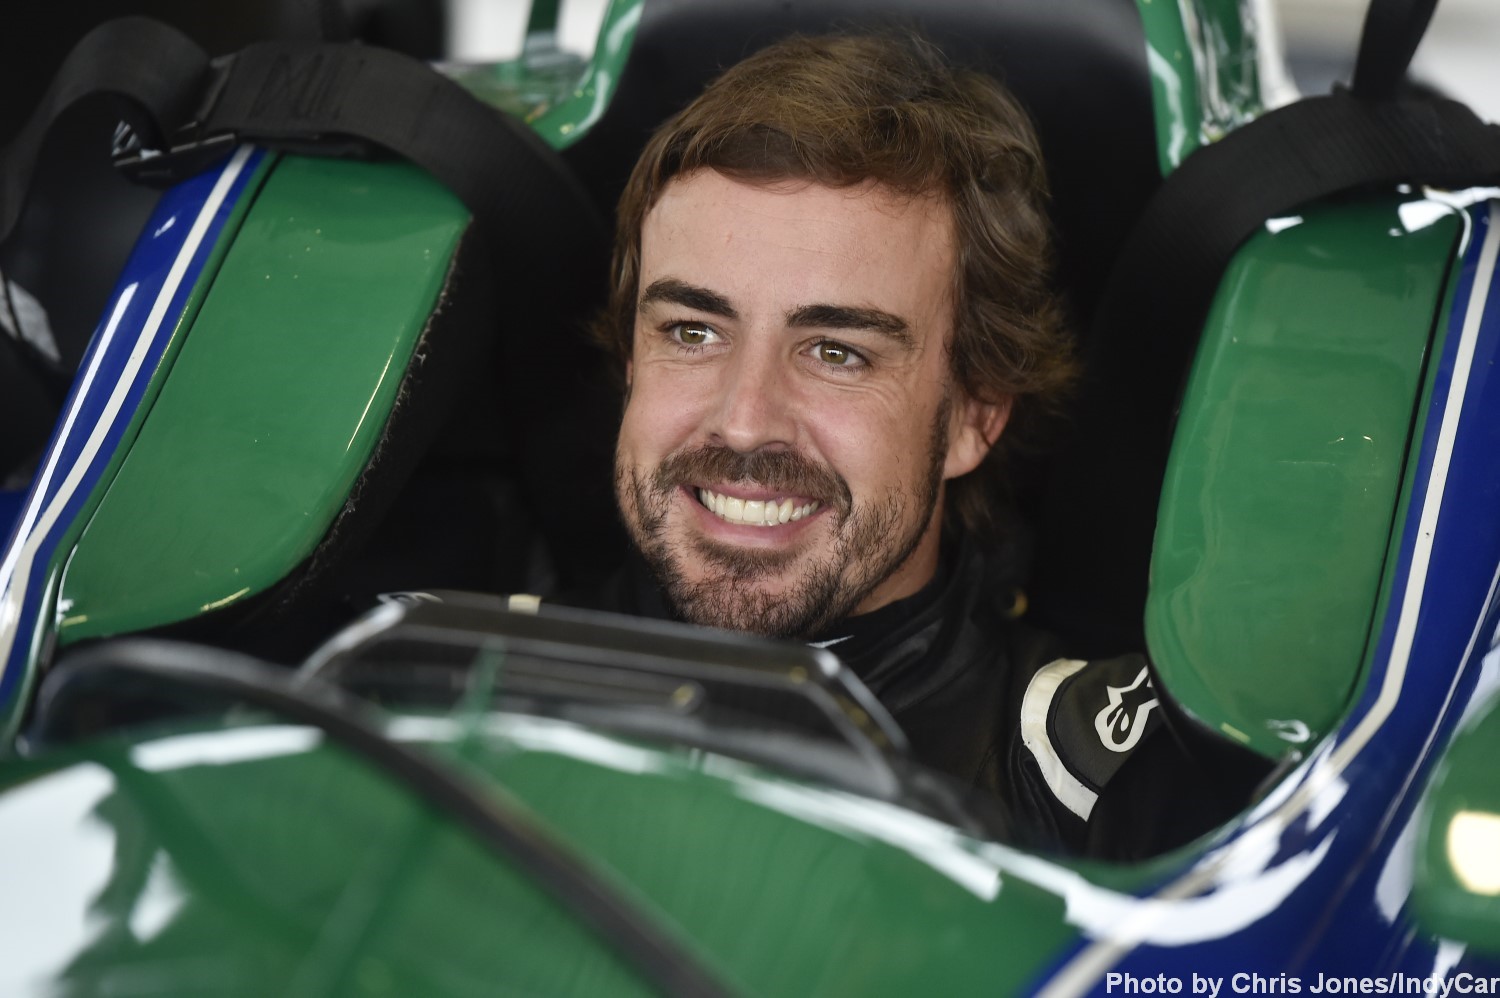 Alonso stringing IndyCar along